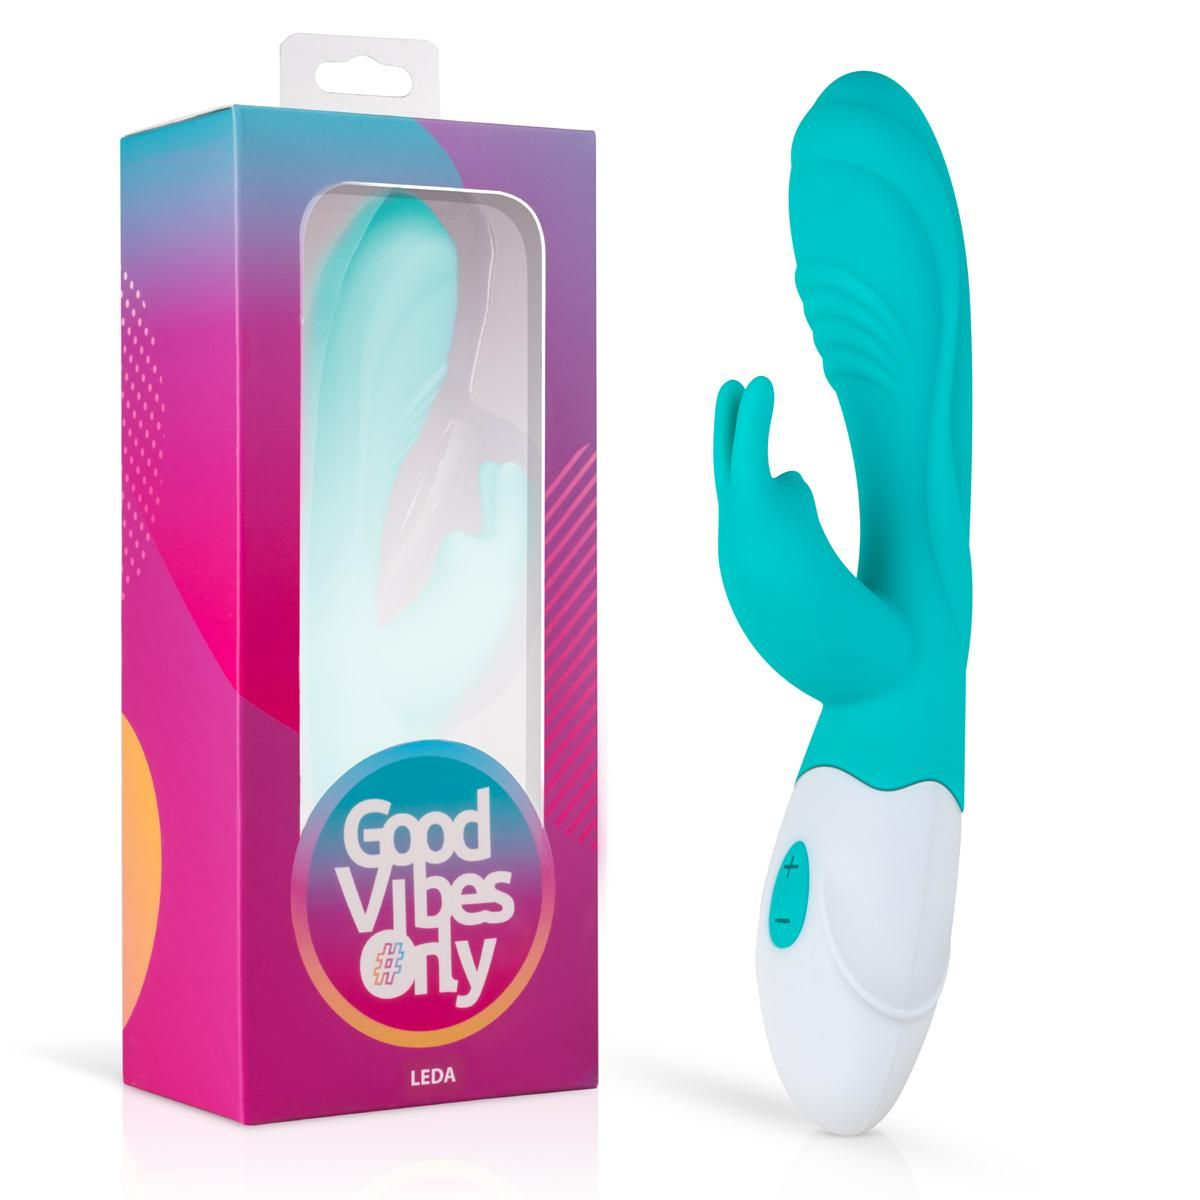 GOOD VIBES ONLY Vibrator Rabbit Leda rabbit-vibratoren